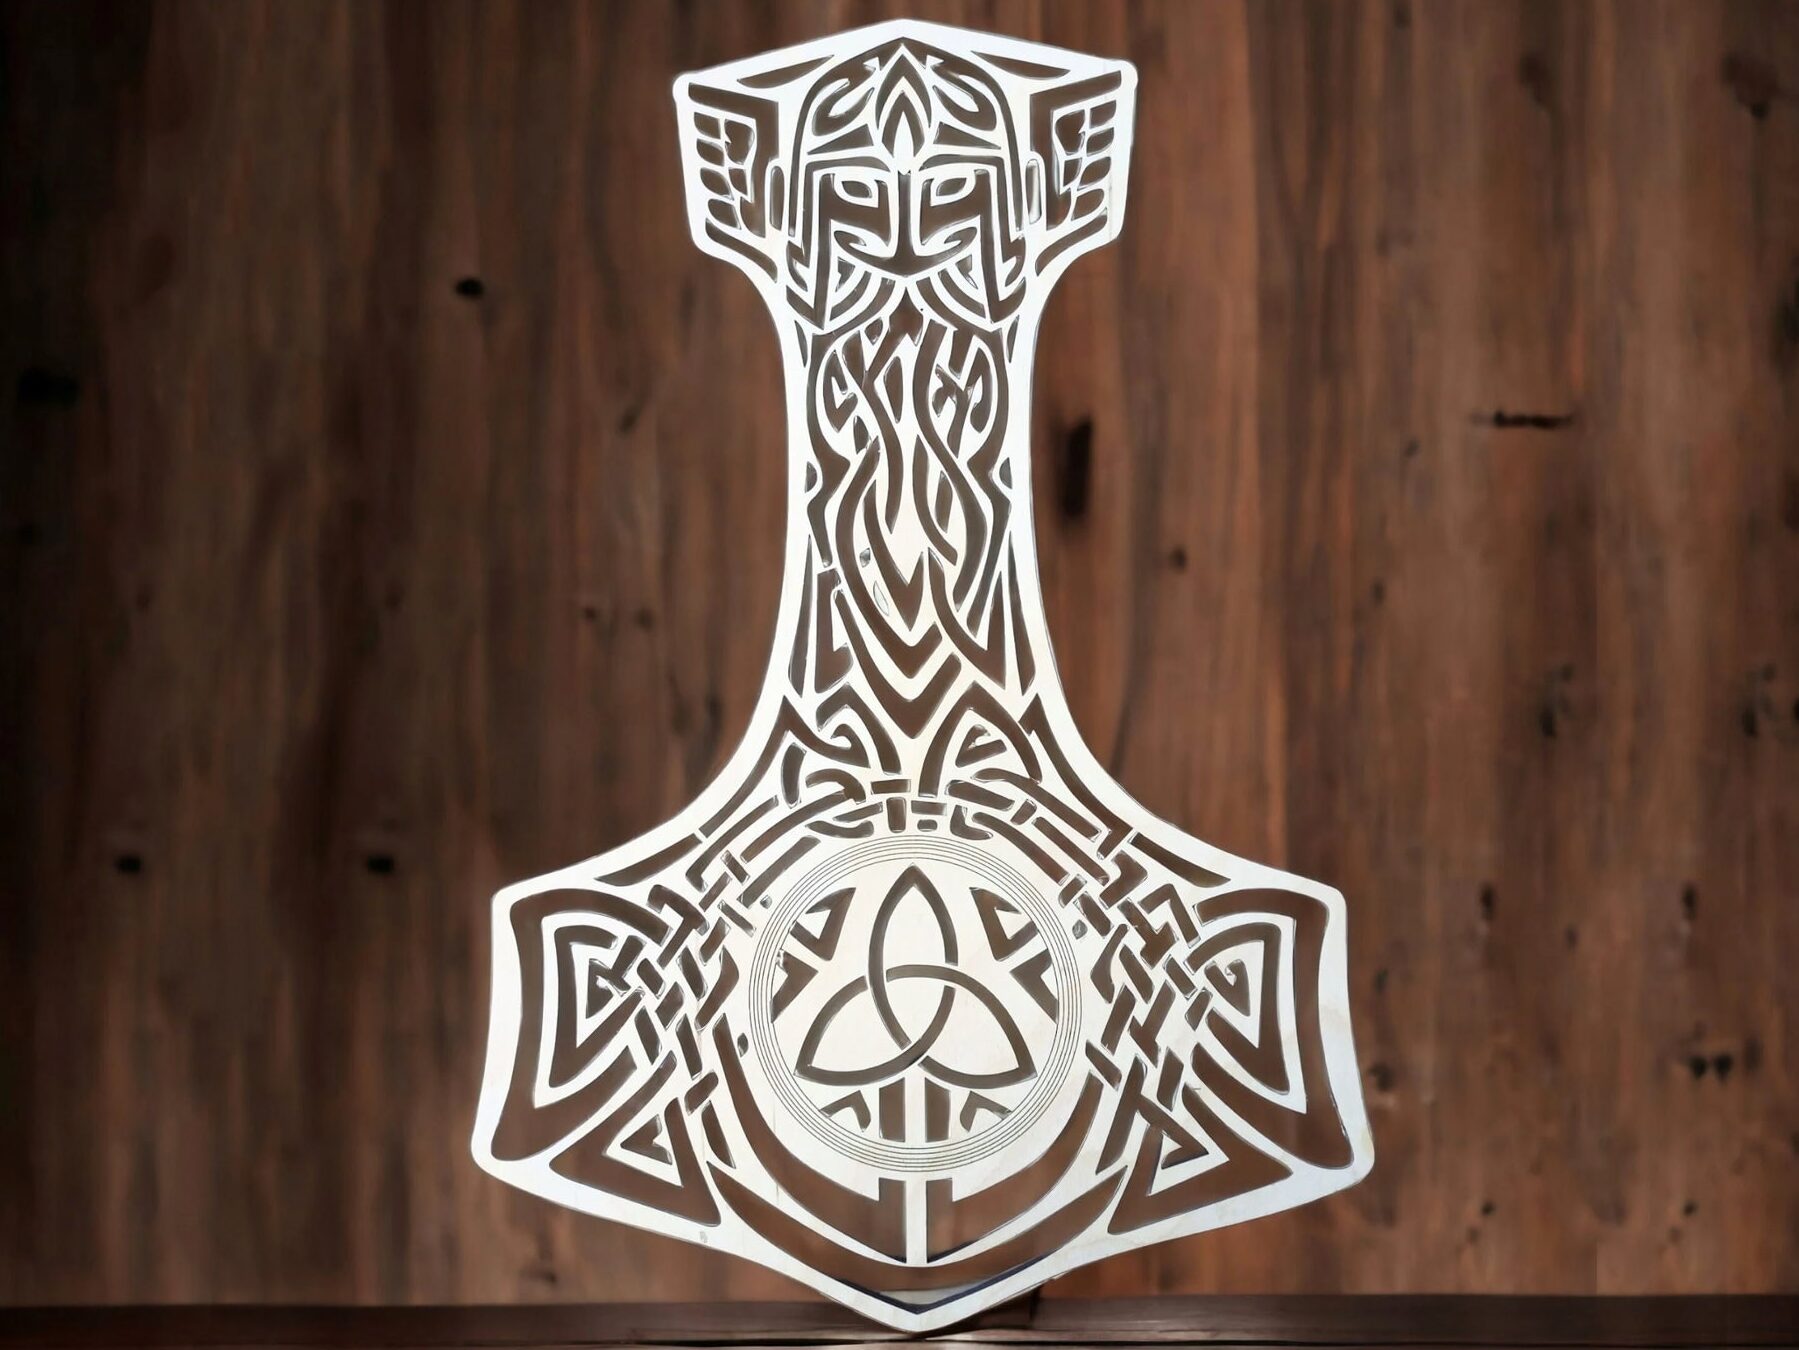 El martillo de Thor: Mjolnir, arma mítica del dios nórdico del trueno.